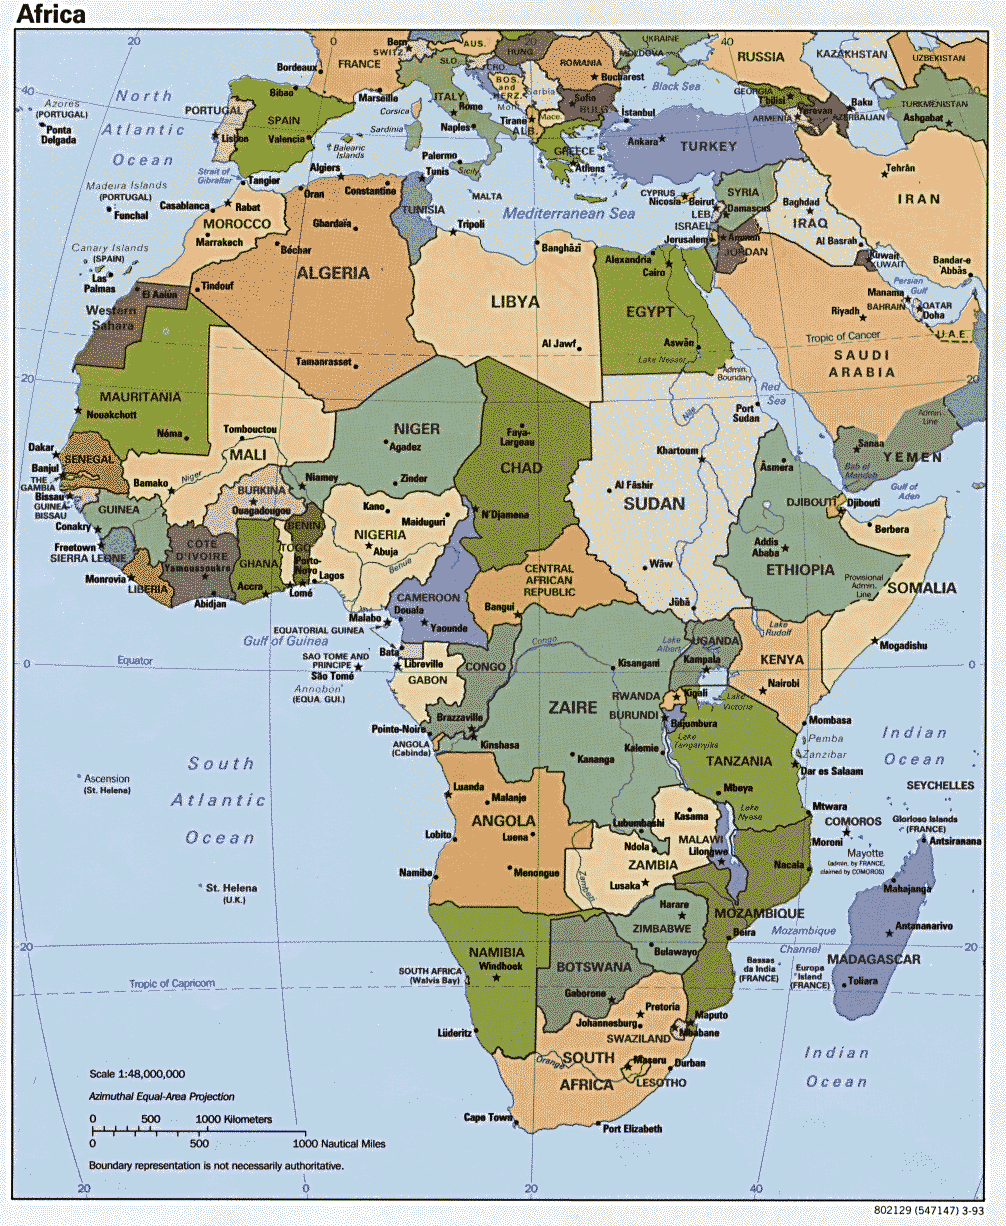 AS NOVAS AMEAÇAS EM ÁFRICA - Página Global